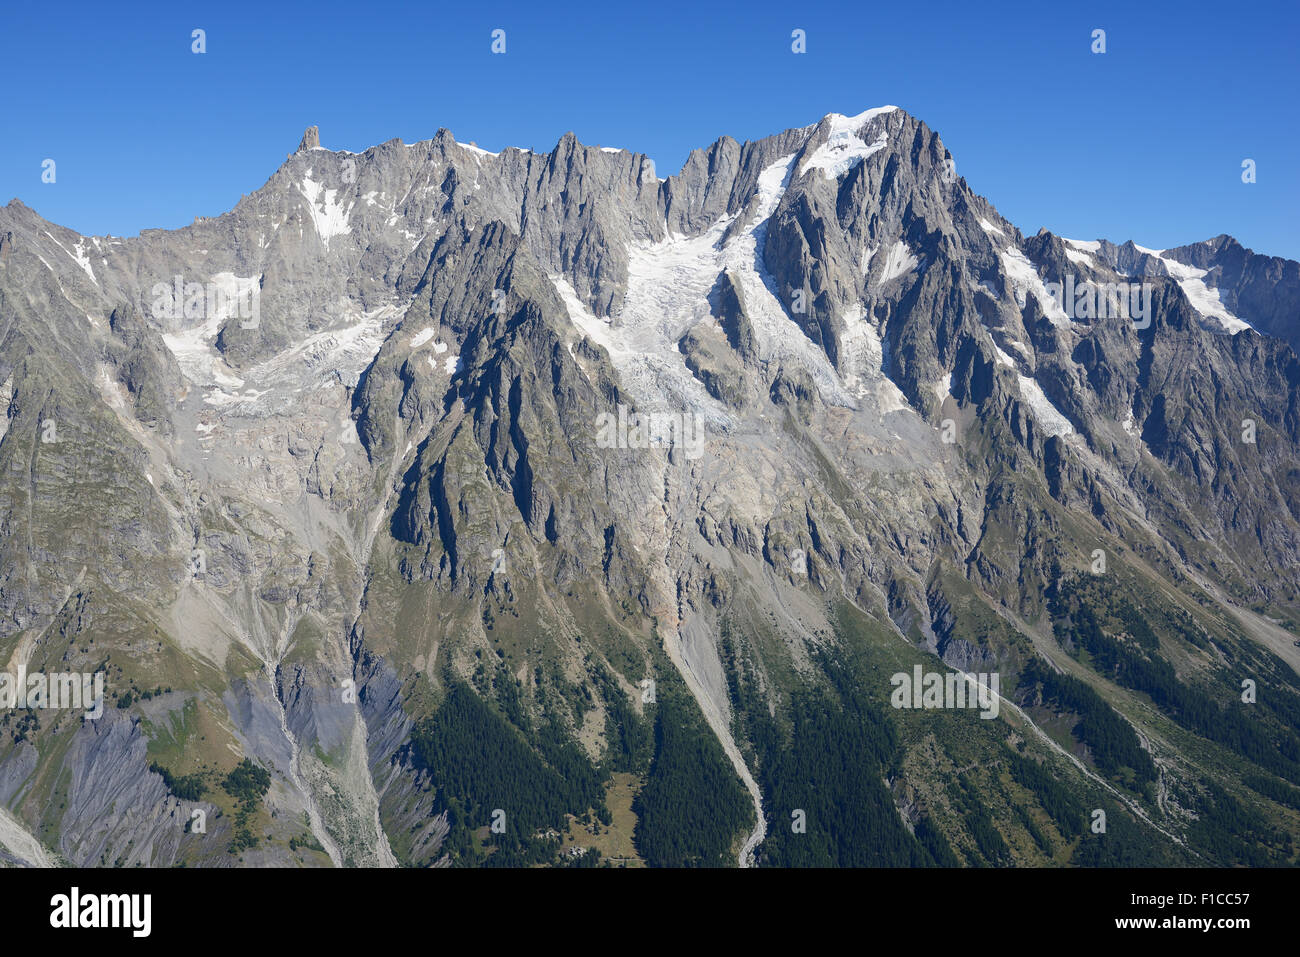 VUE AÉRIENNE.Dent du géant (à gauche, 4013 mètres asl) et les grandes Jorasses (à droite, 4208 mètres asl).Val Ferret, Courmayeur, Vallée d'Aoste, Italie. Banque D'Images